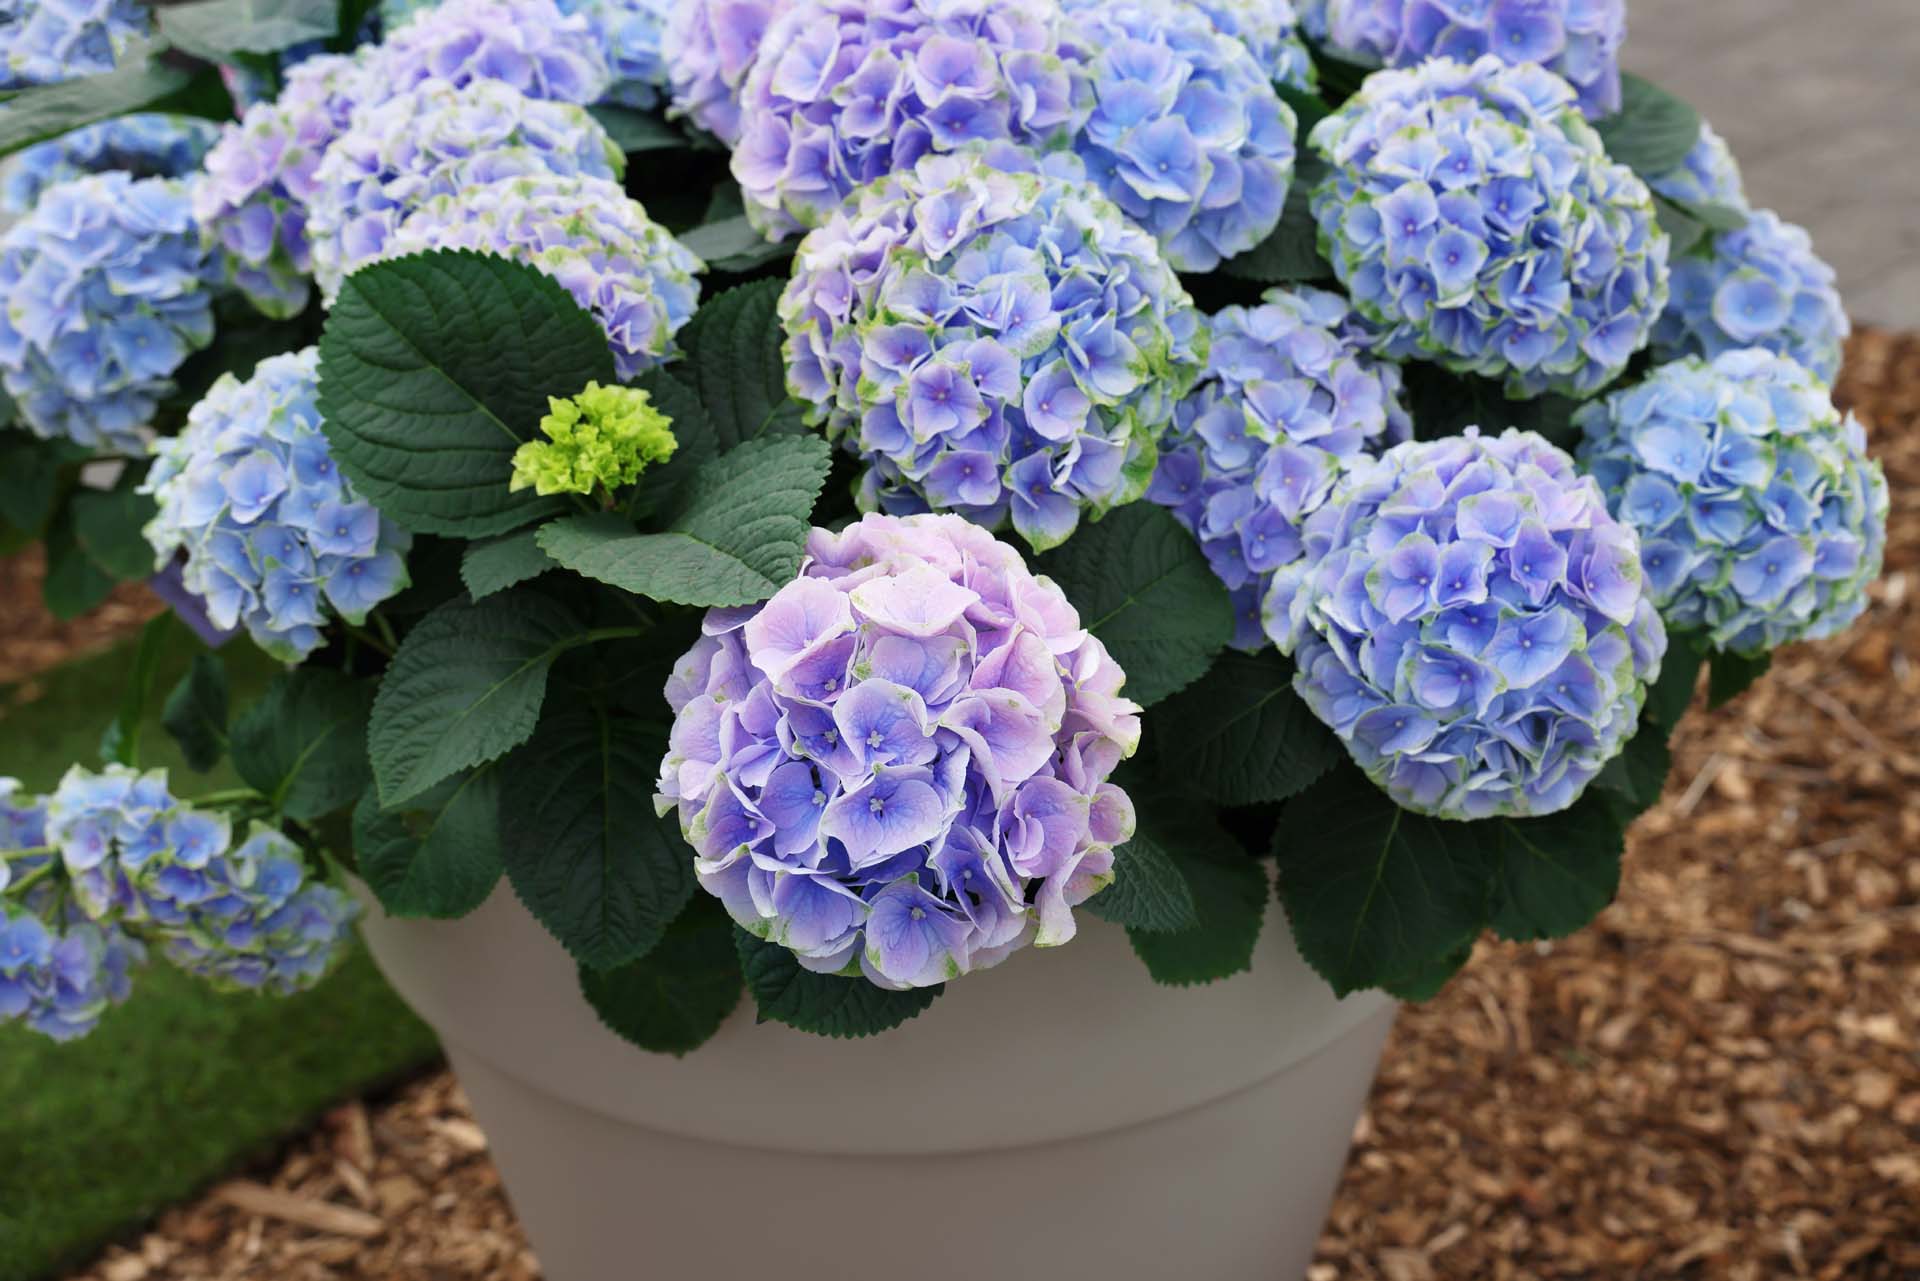 Blue hydrangeas in a pot